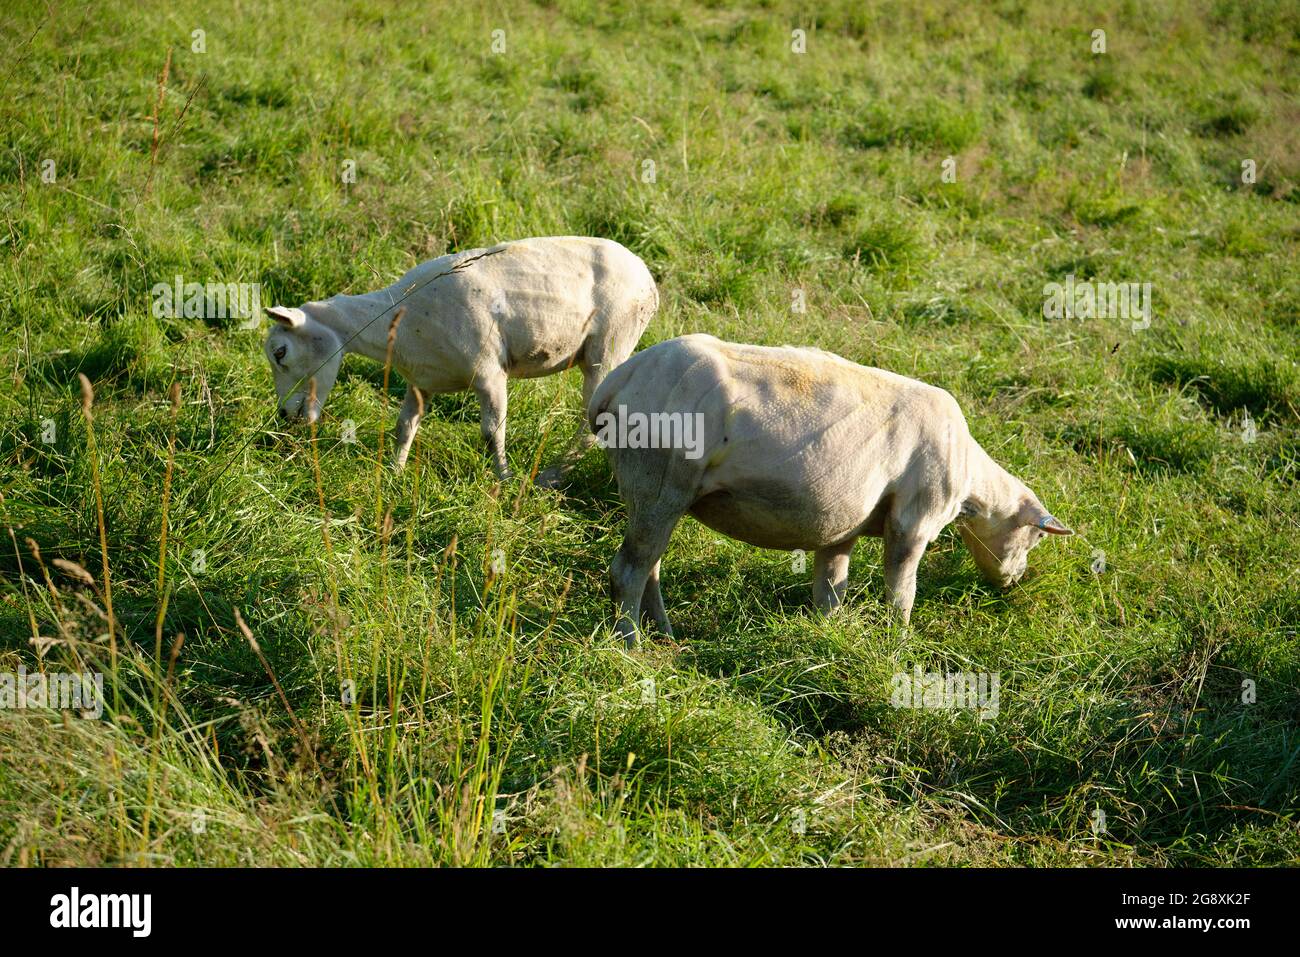 Grasende Mutterschafe kurz nach dem Schern. Schafe im Sommer, nachdem ihr Wintermantel entfernt wurde. Stockfoto